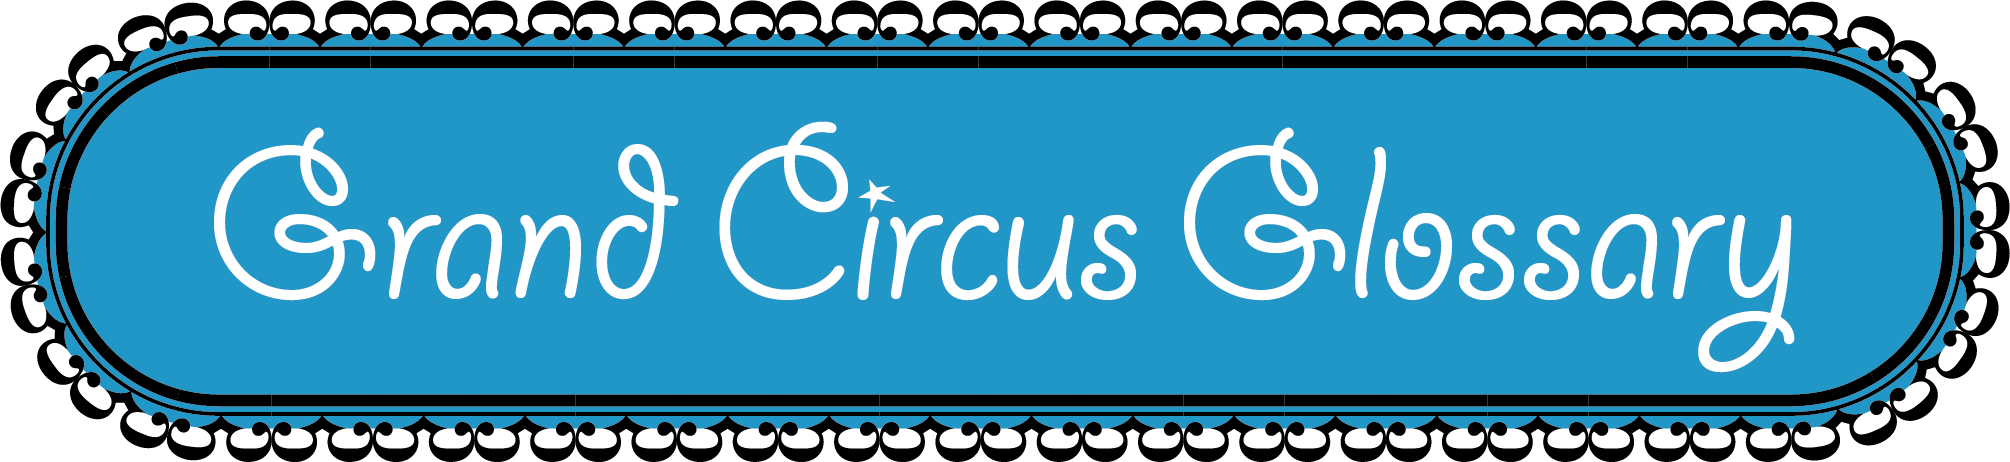 Grand Circus Glossary